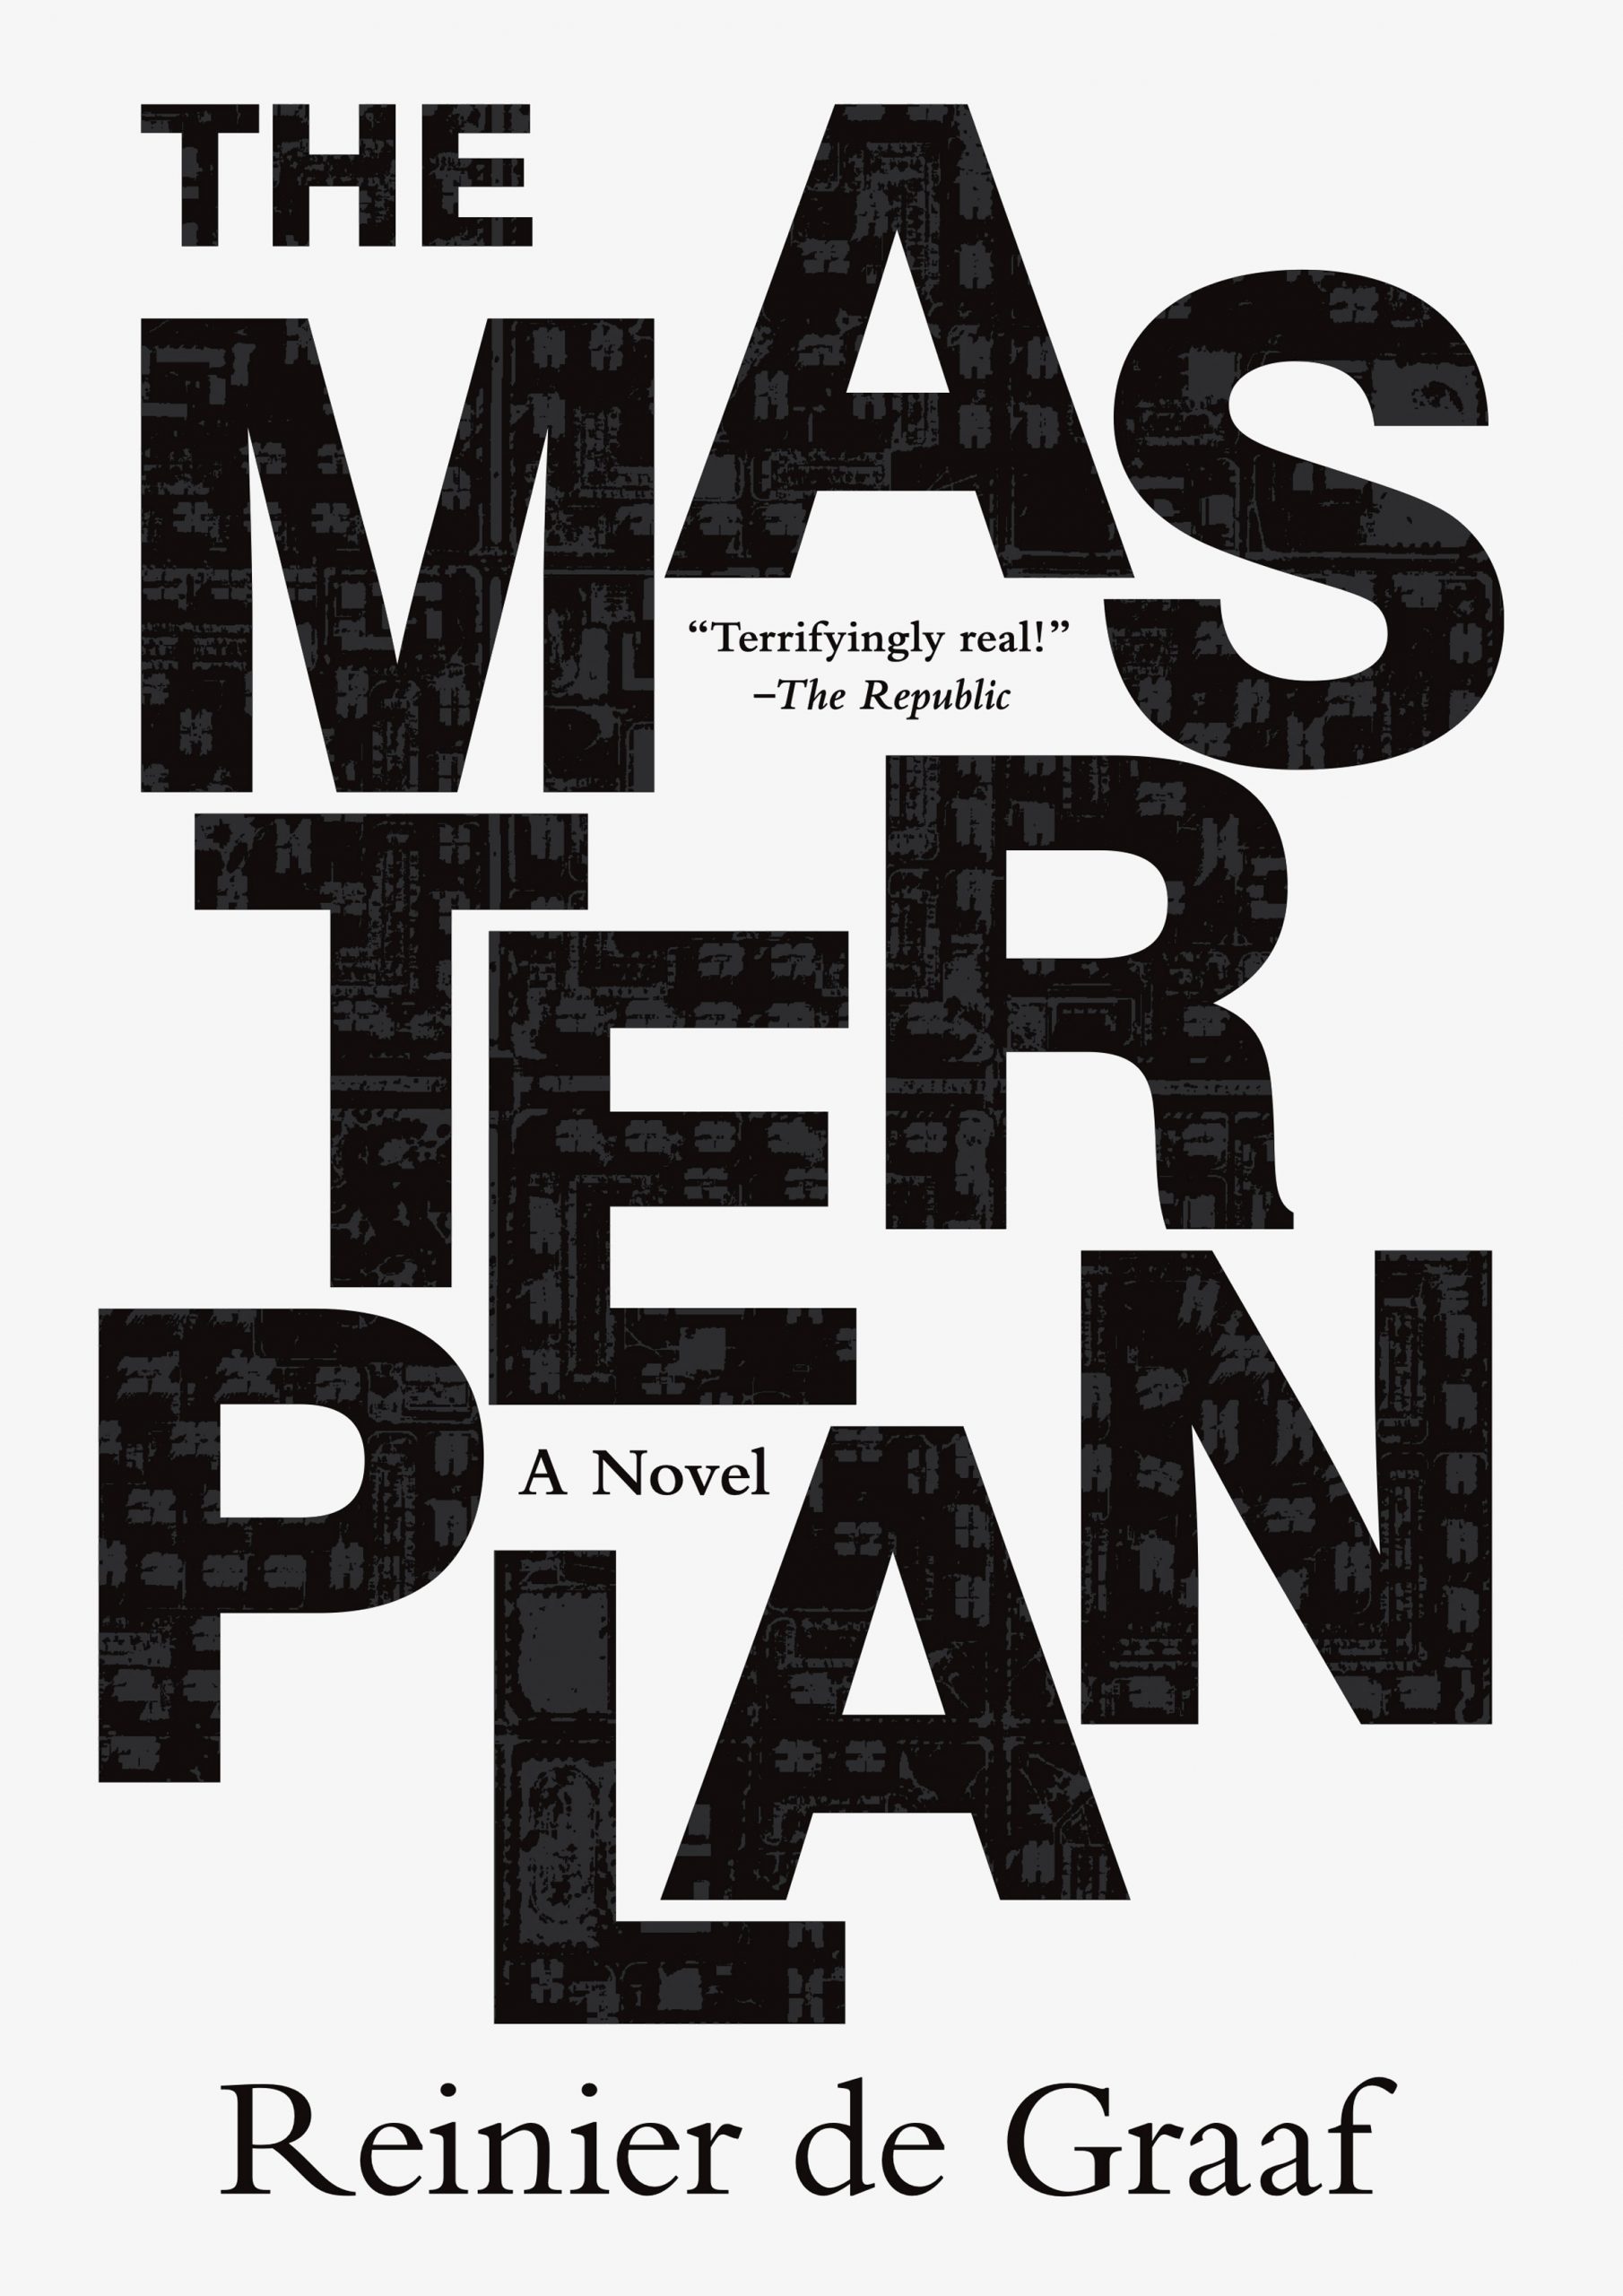 Masterplan by Reinier de Graaf